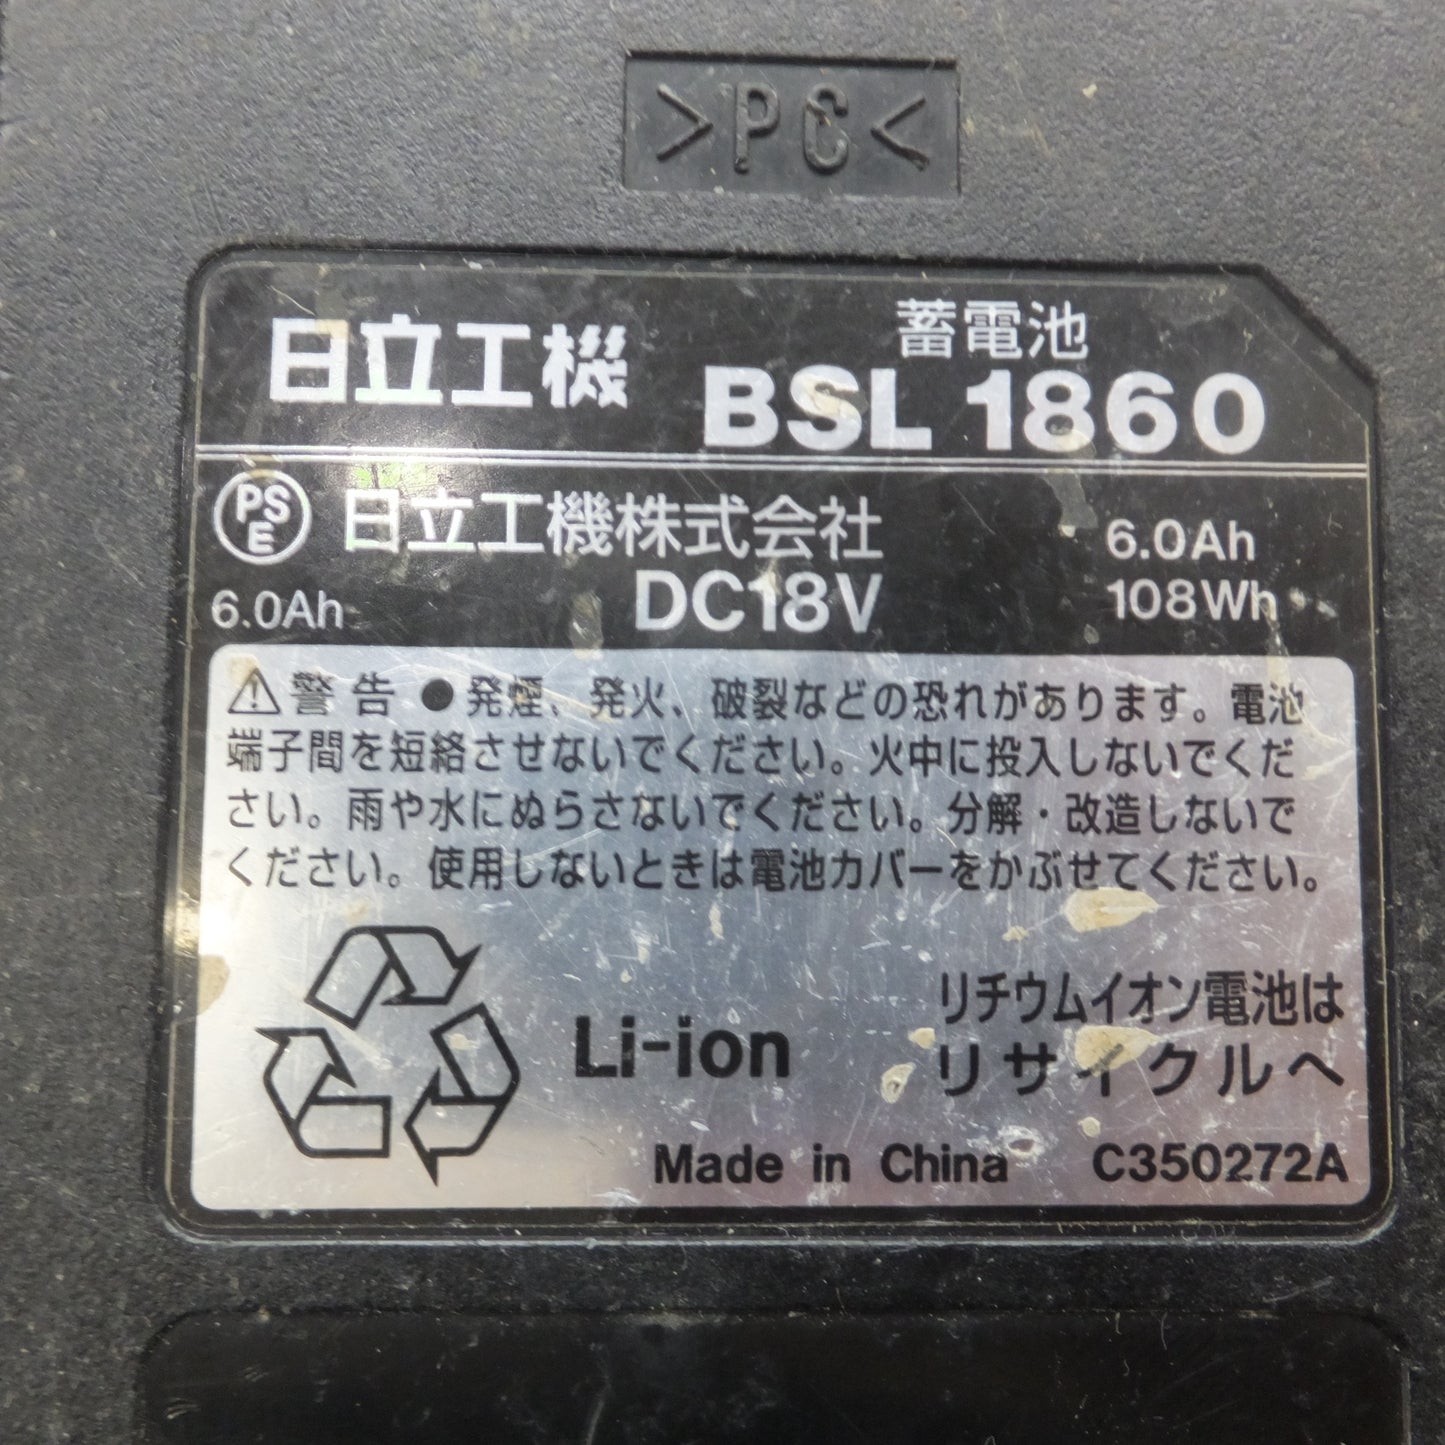 [送料無料] ★ハイコーキ HiKOKI 日立 HITACHI 蓄電池 BSL1860　DC18V 6.0Ah 108Wh Li-ion　4個 セット★